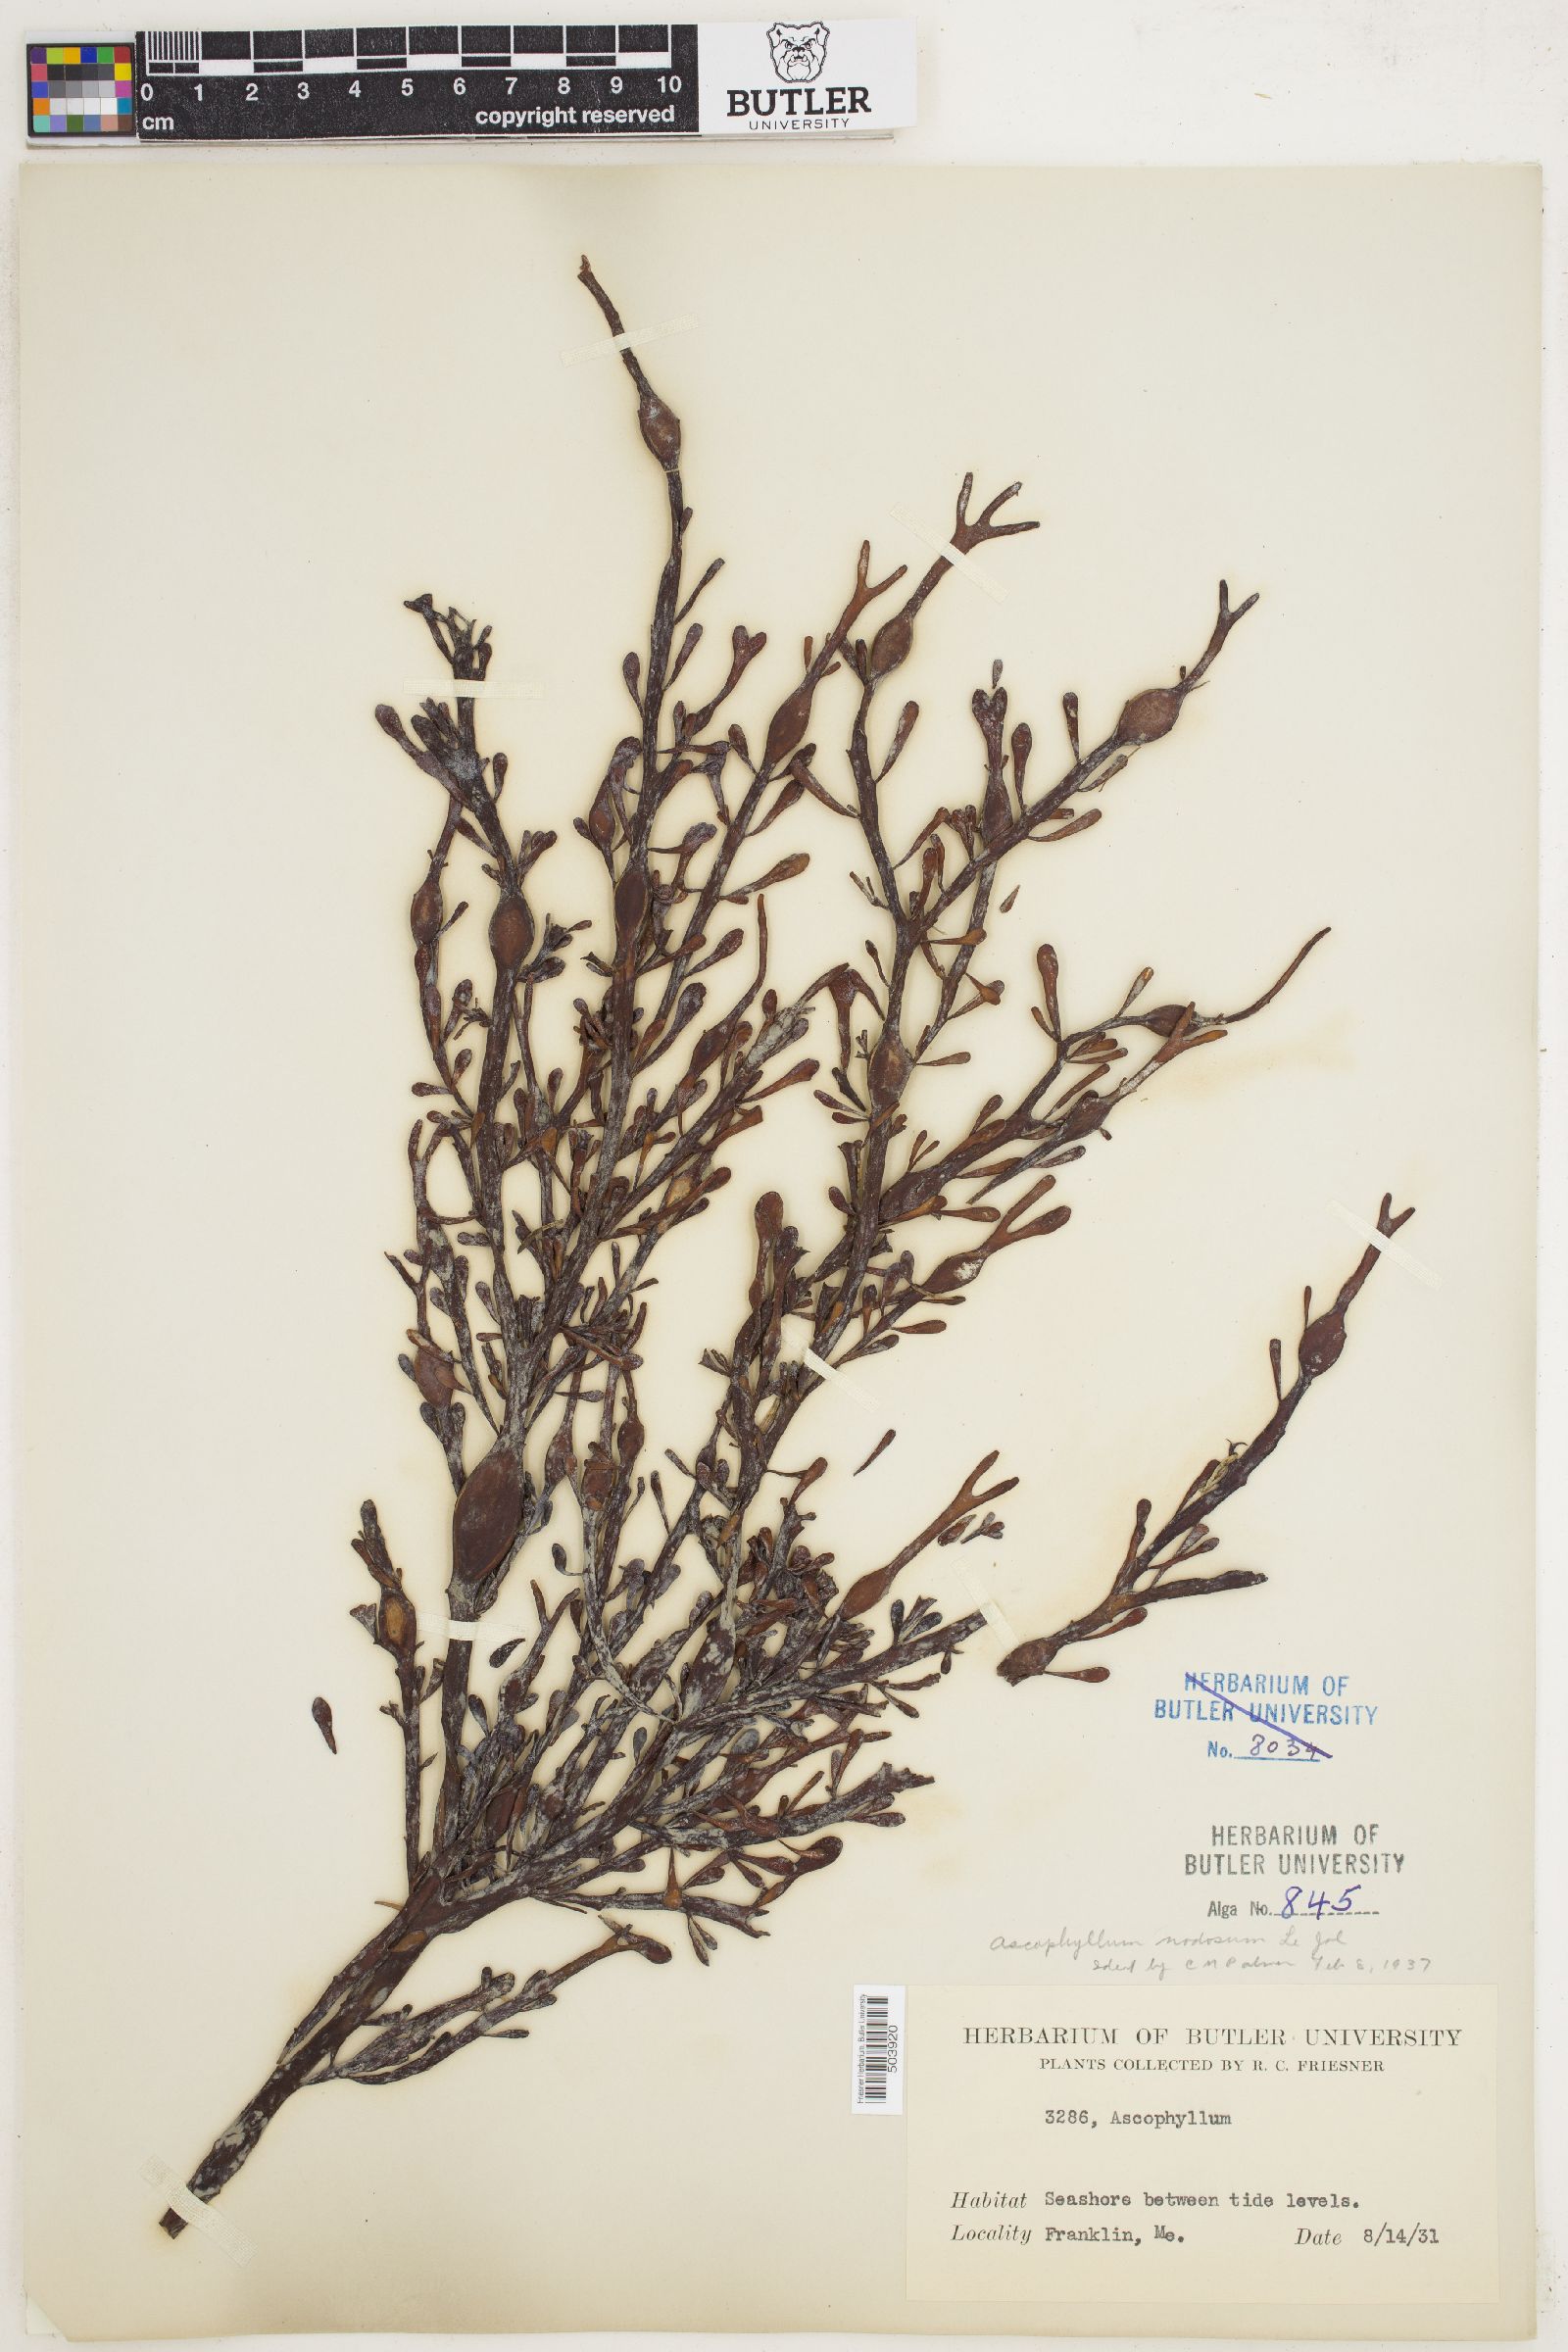 Ascophyllum image